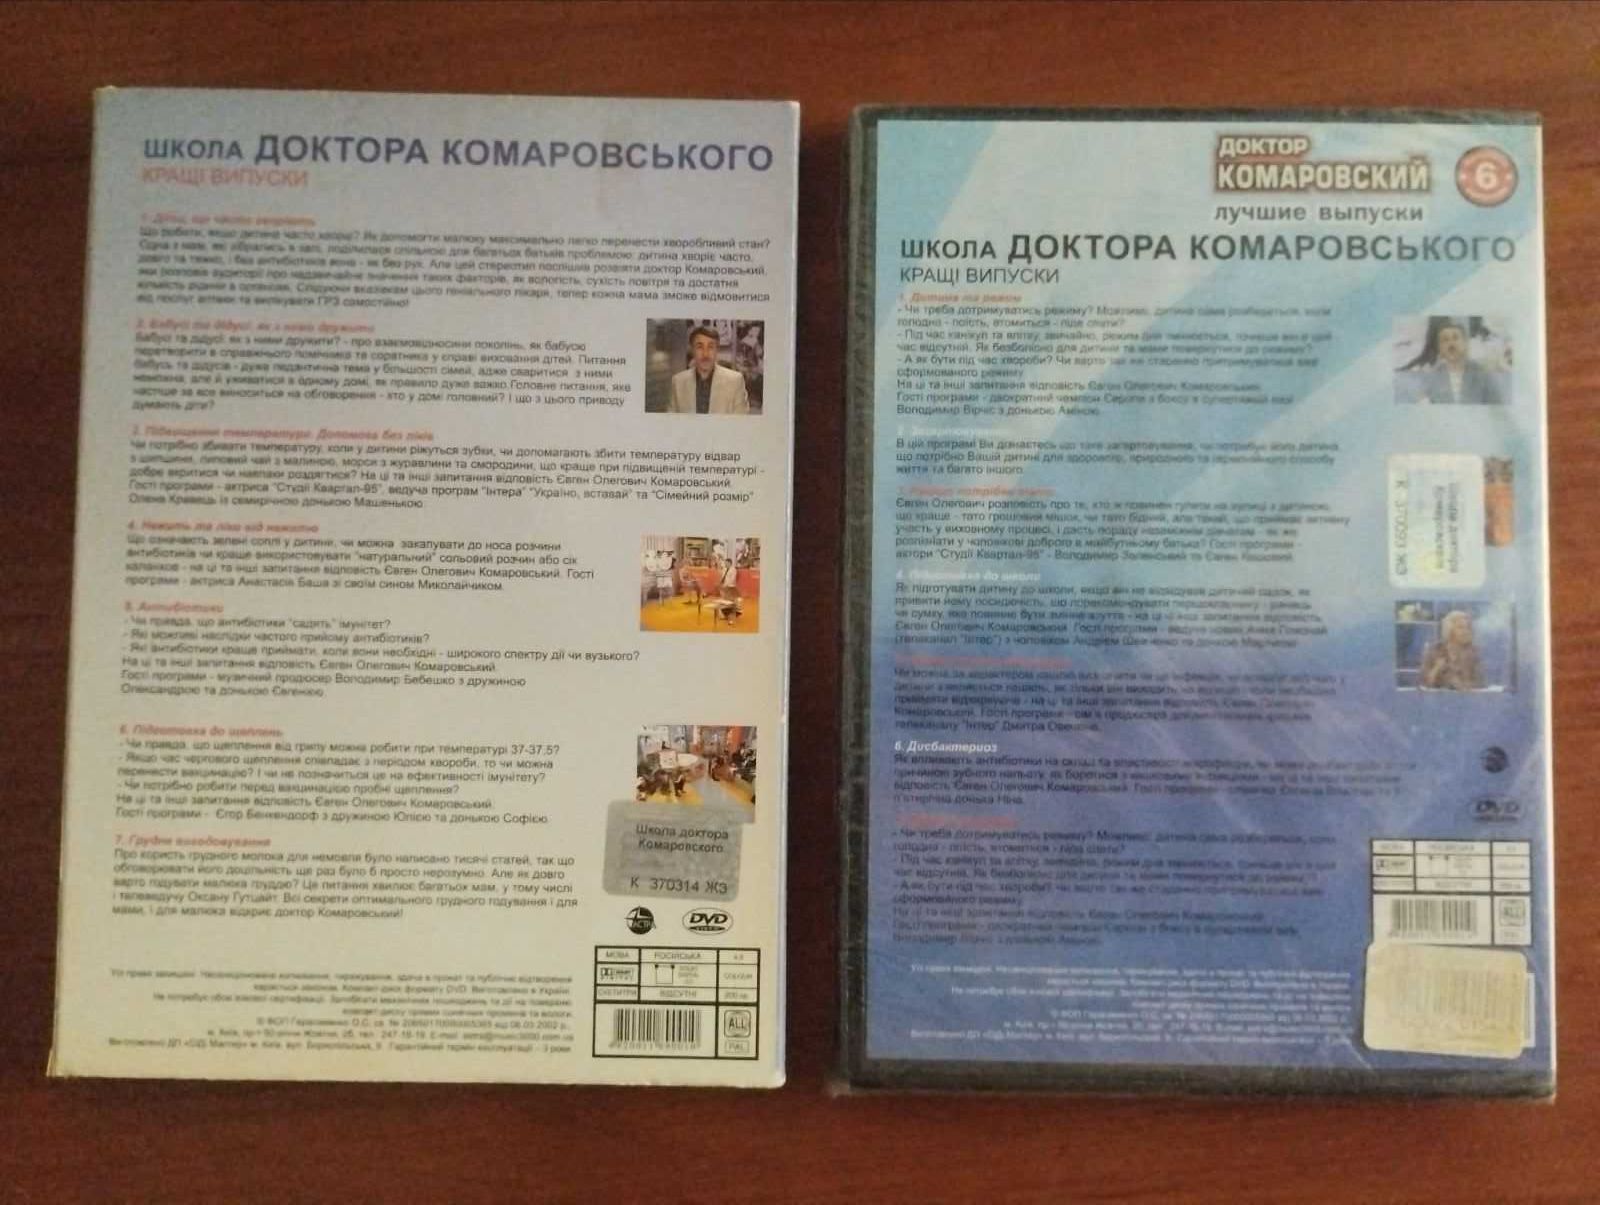 2 диска DVD-video ДОКТОР КОМАРОВСКИЙ лучшие выпуски на двд